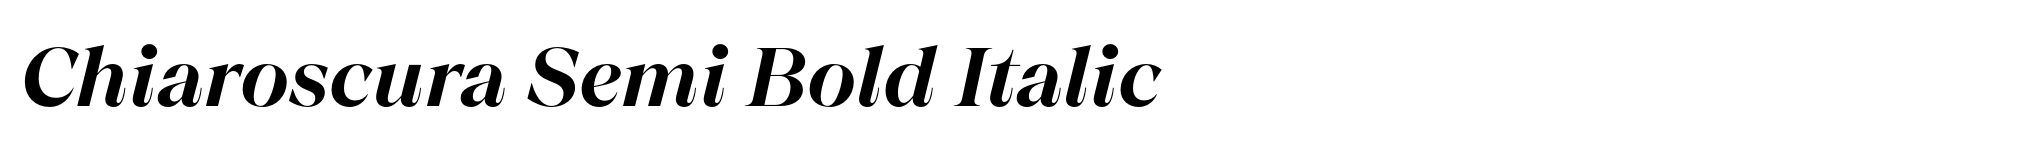 Chiaroscura Semi Bold Italic image